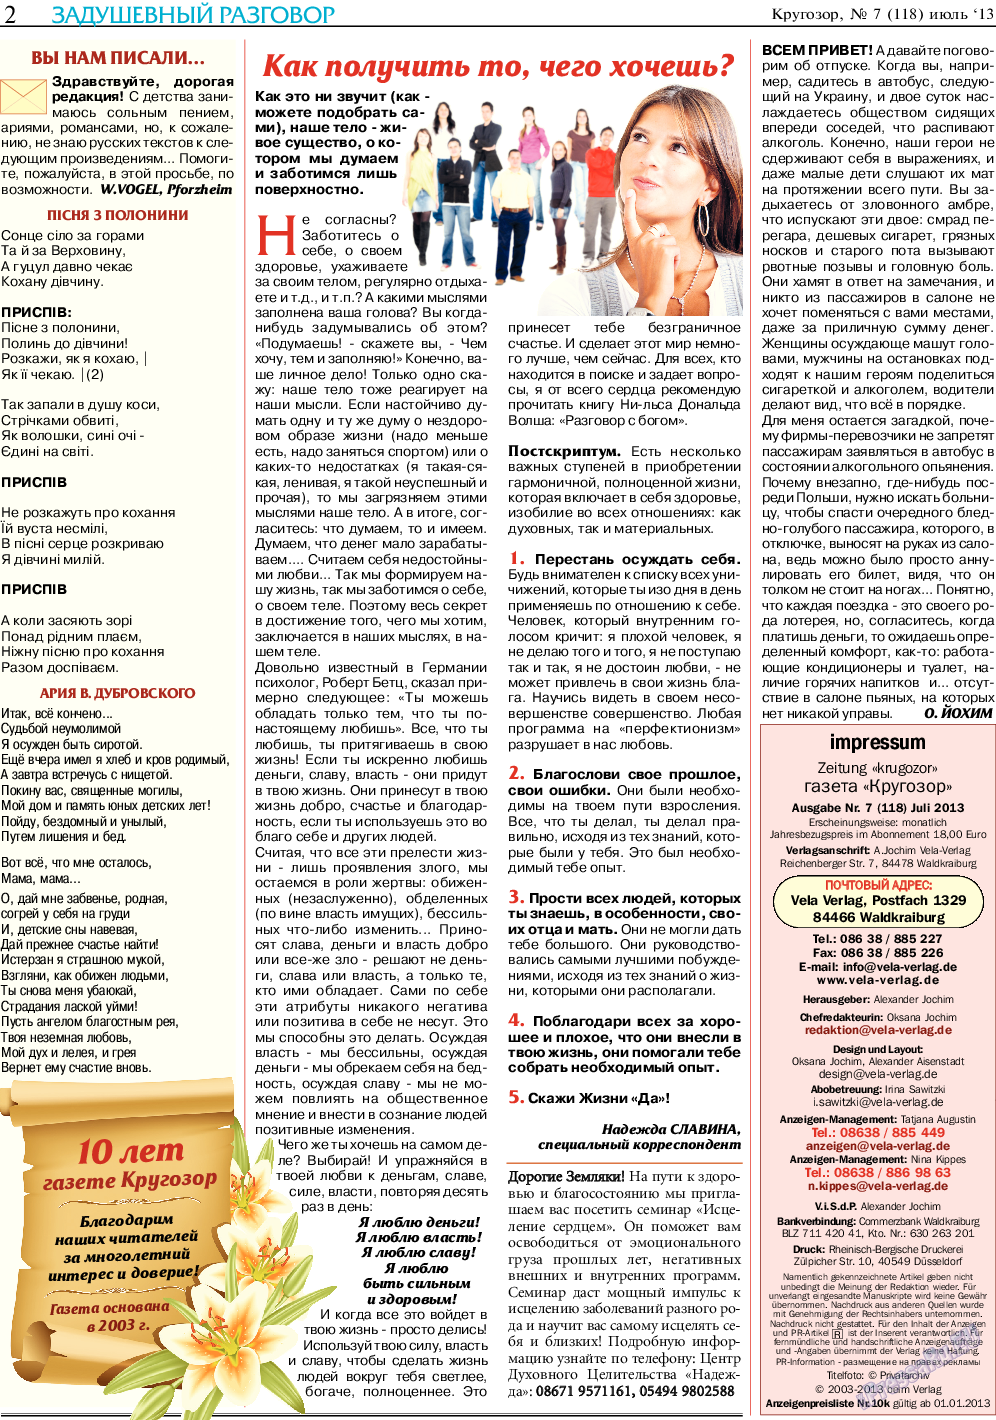 Кругозор, газета. 2013 №7 стр.2